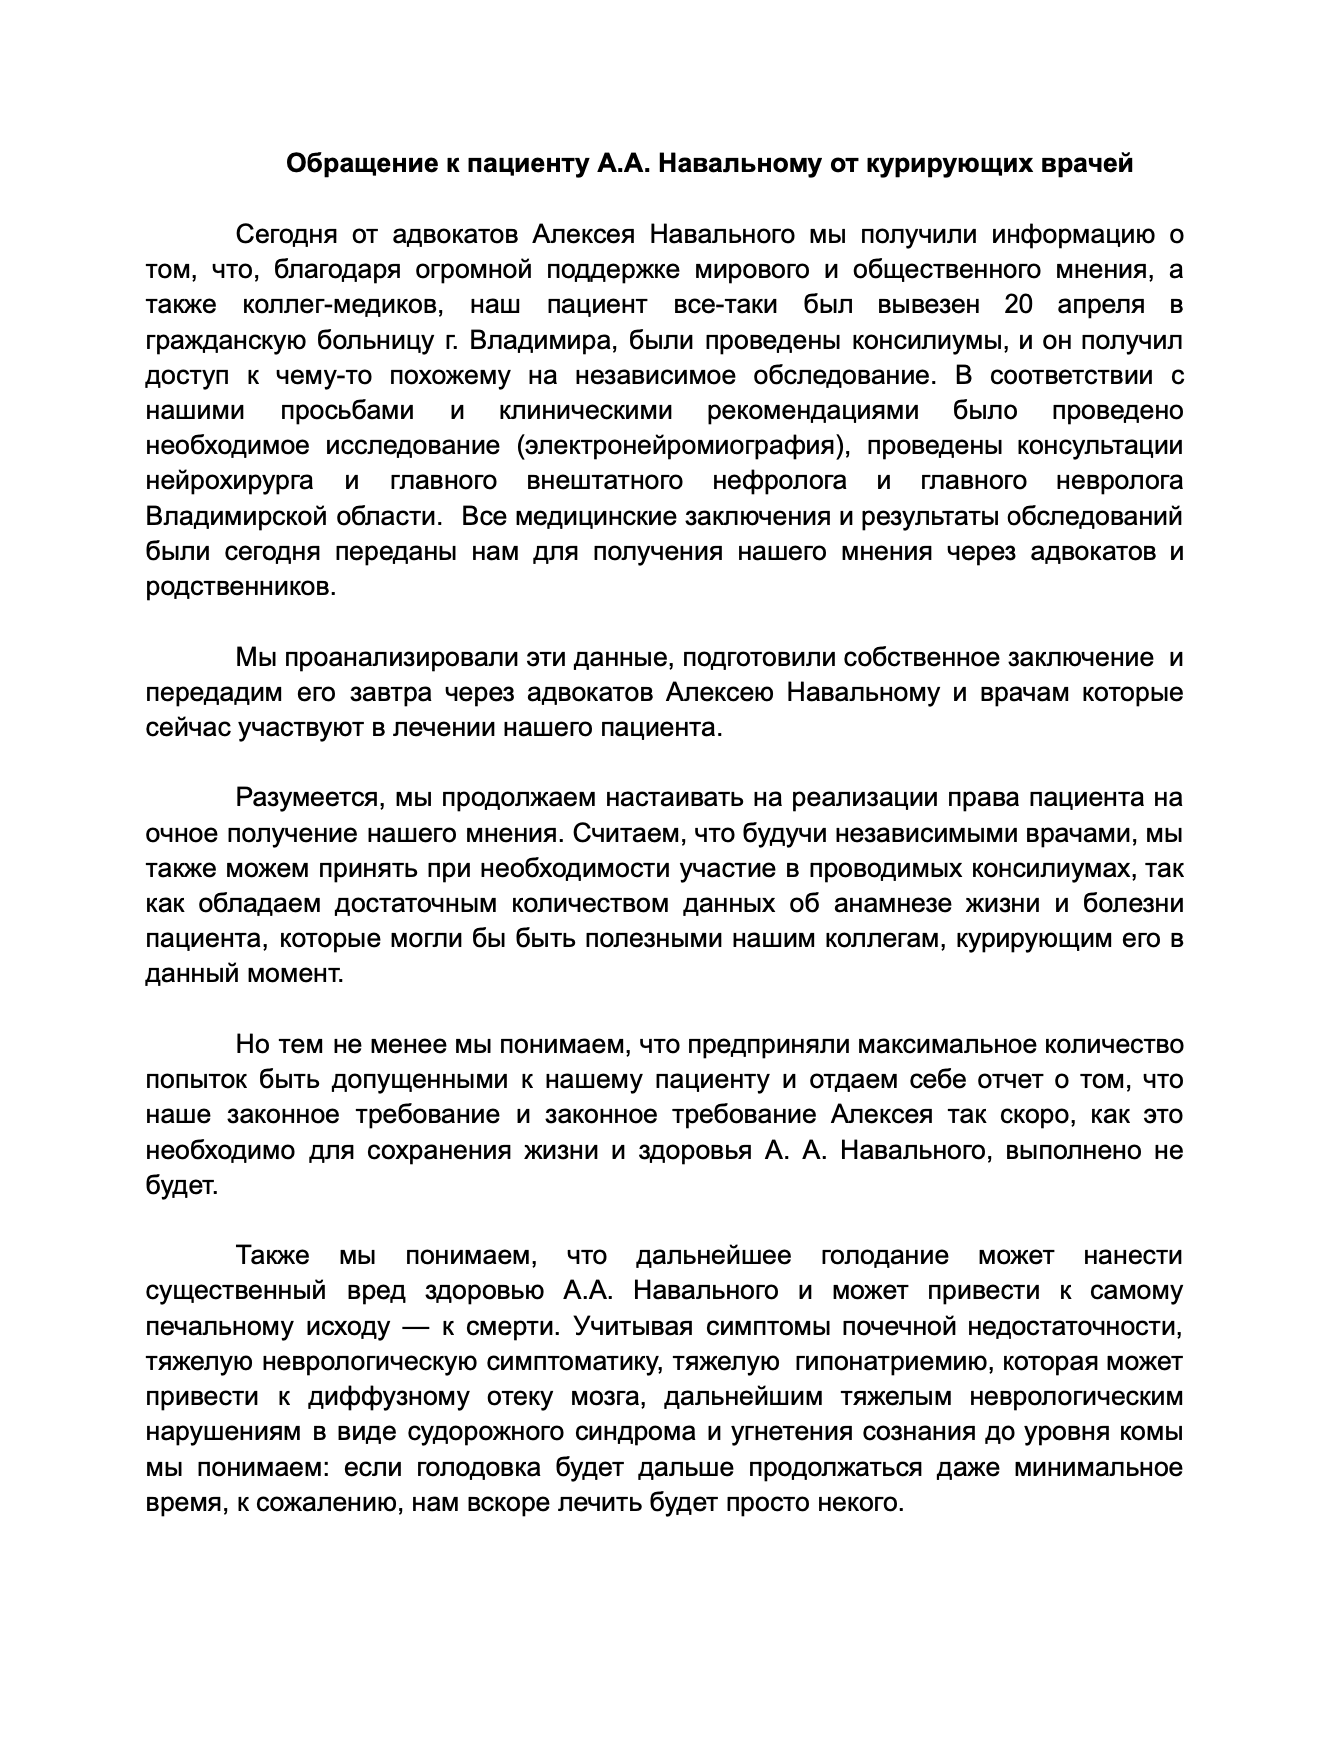 Текст обращения к Навальному, с.1